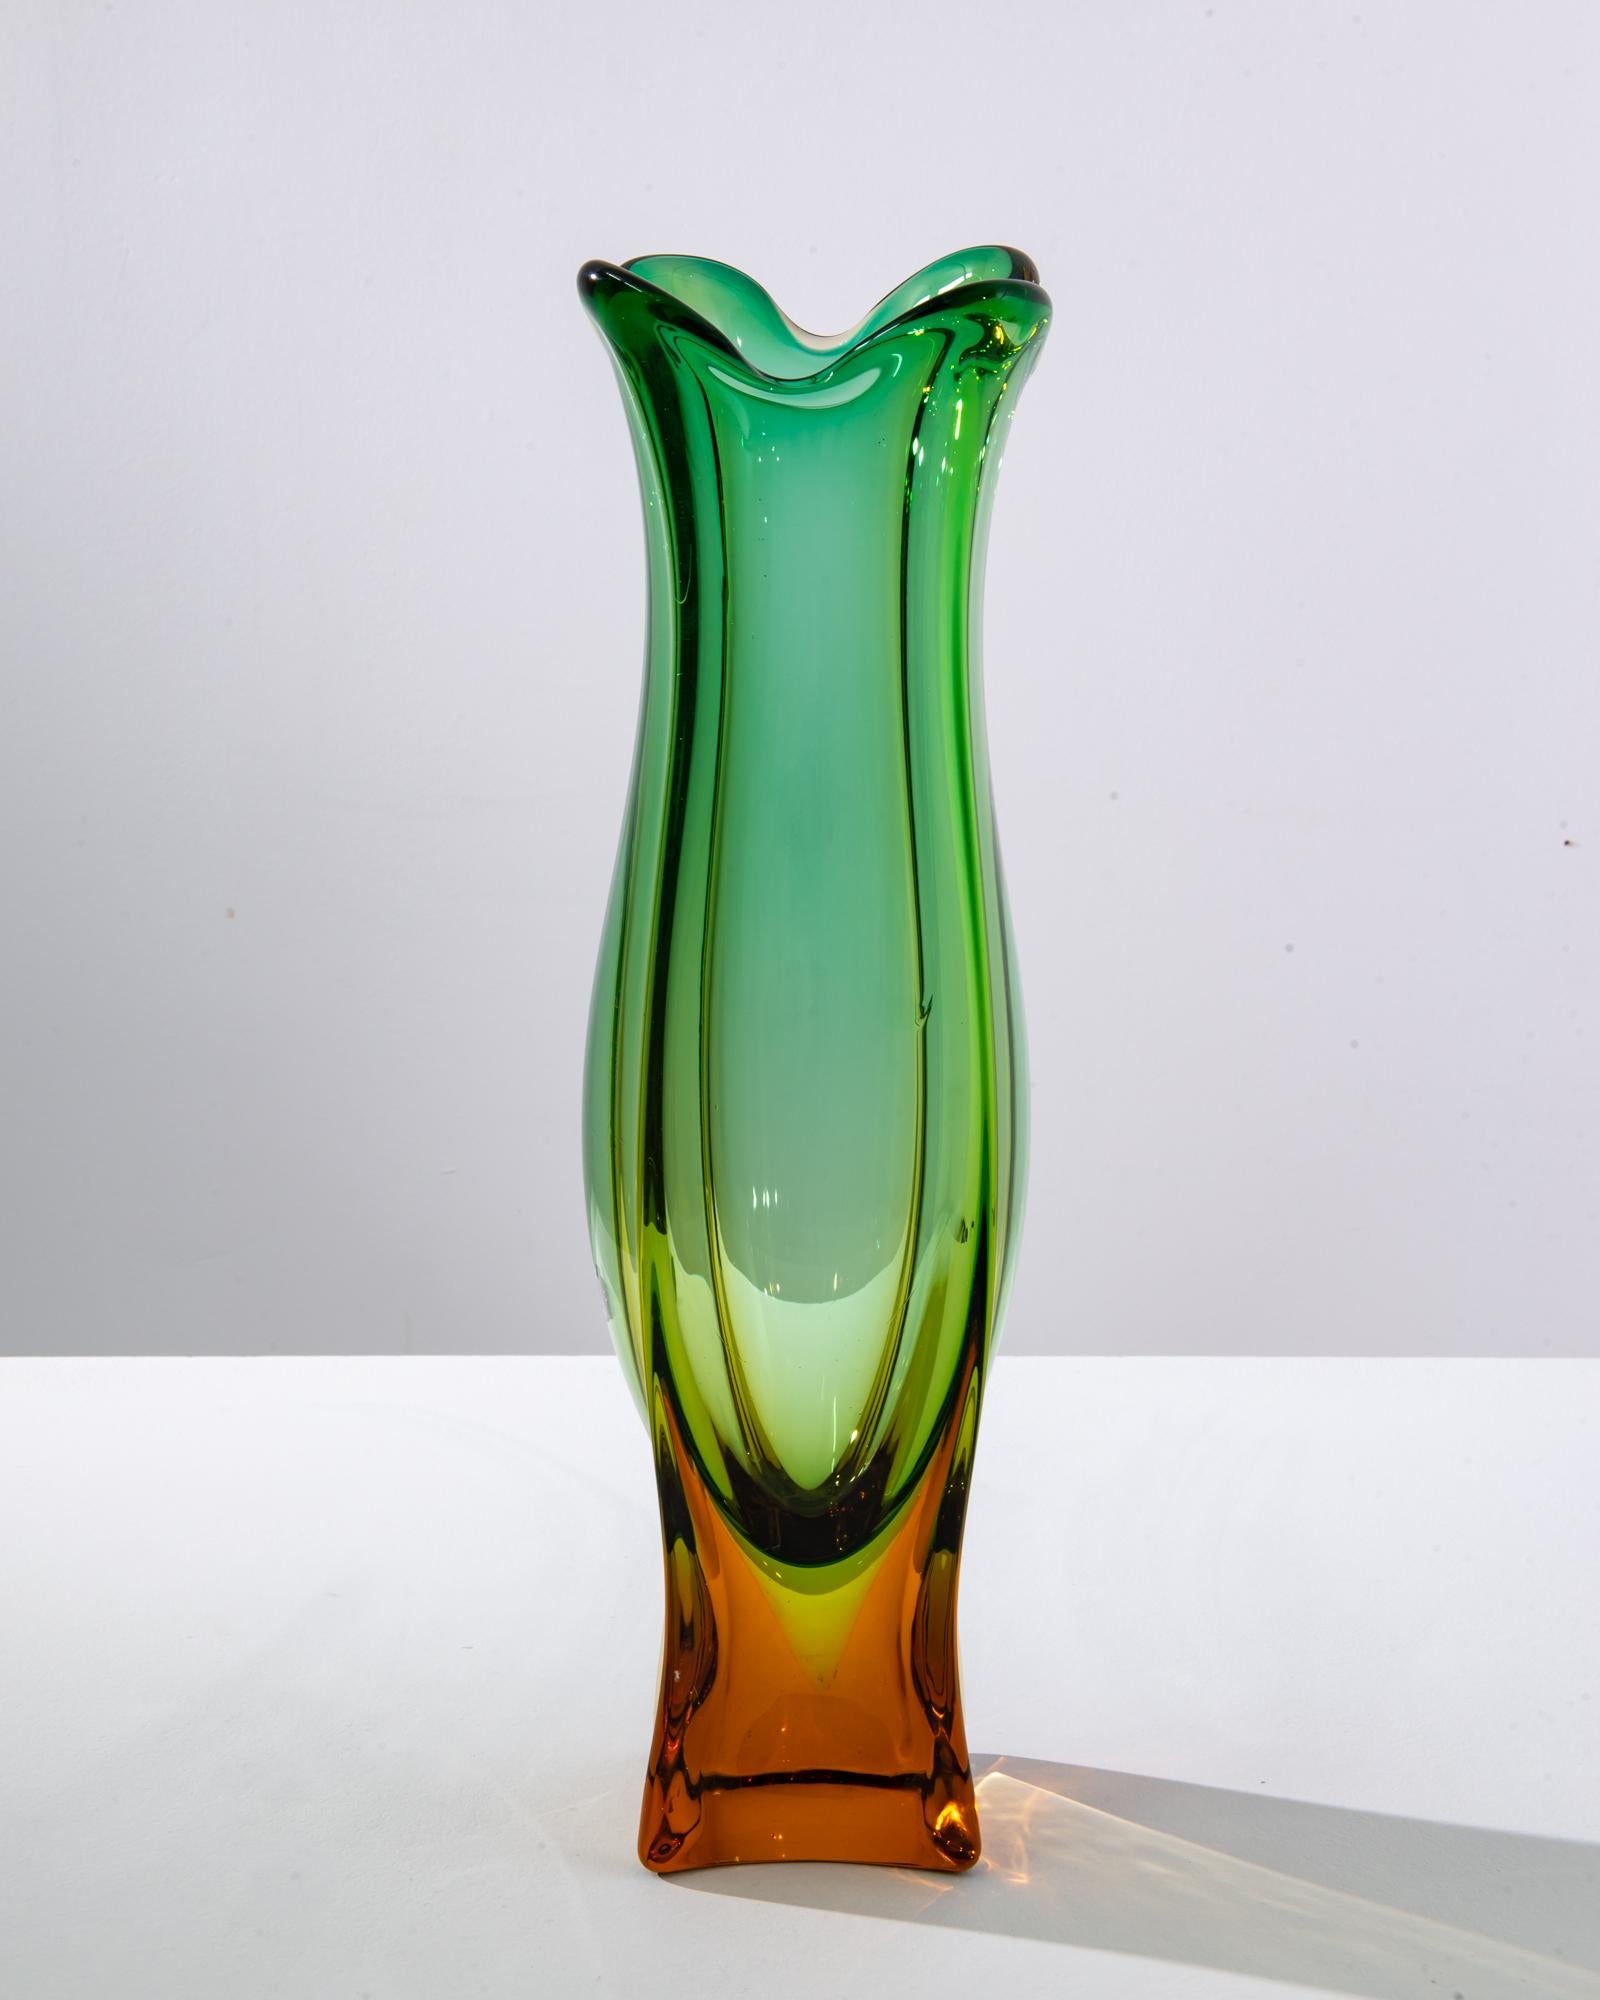 Eine Glasvase aus dem Italien der 1960er Jahre. Diese schillernde Vase wurde von Murano Glass hergestellt, einer renommierten Manufaktur aus Venetien, einer Region, die für ihre jahrtausendealte Glasbläserkunst bekannt ist. Orange-gelbe Farbtöne